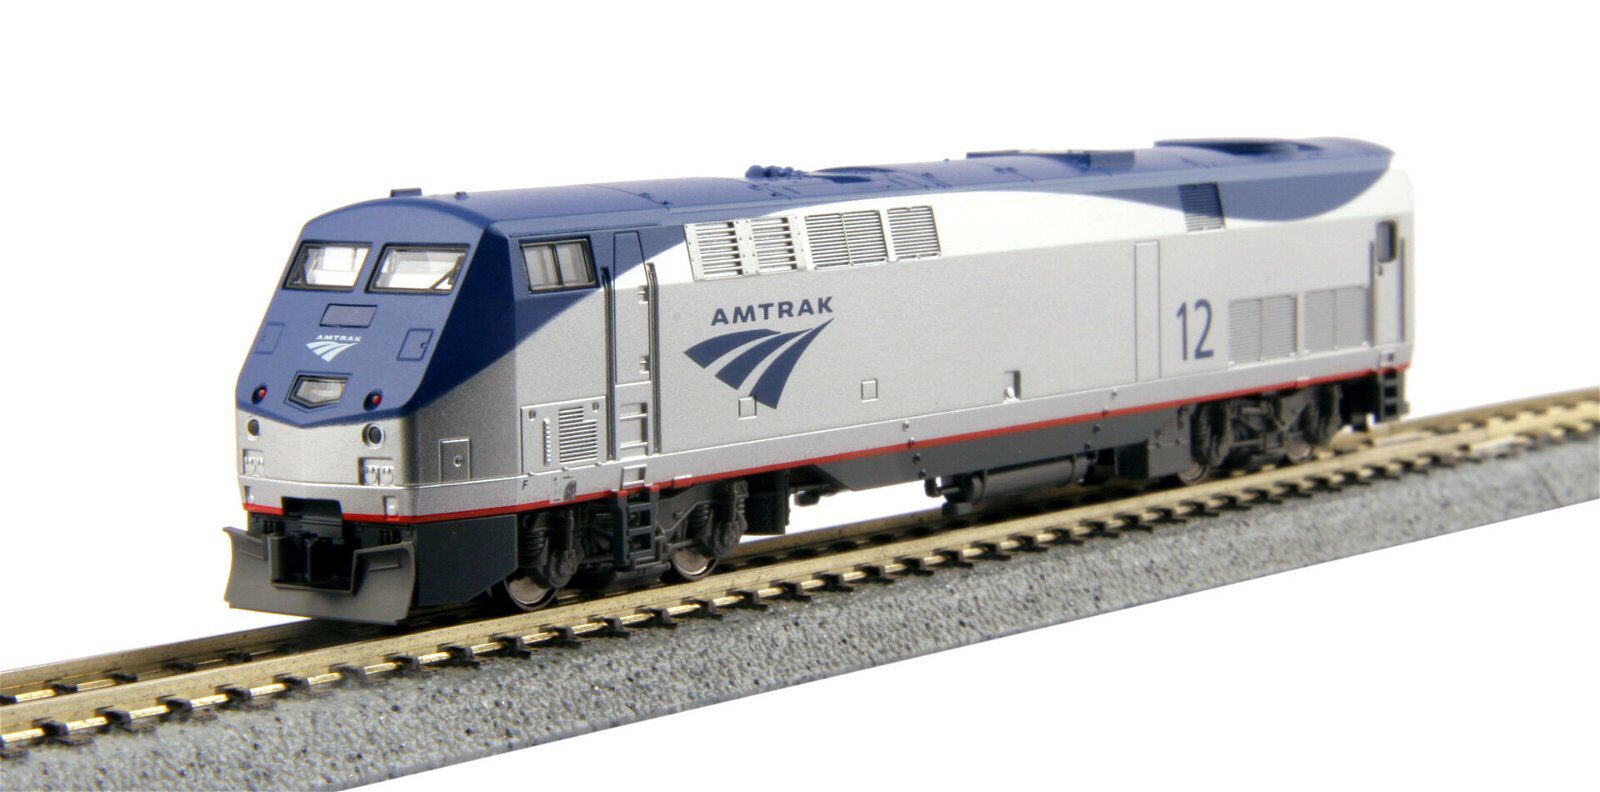 Kato 701766033 P42 Amtrak Genesis Phase V #169